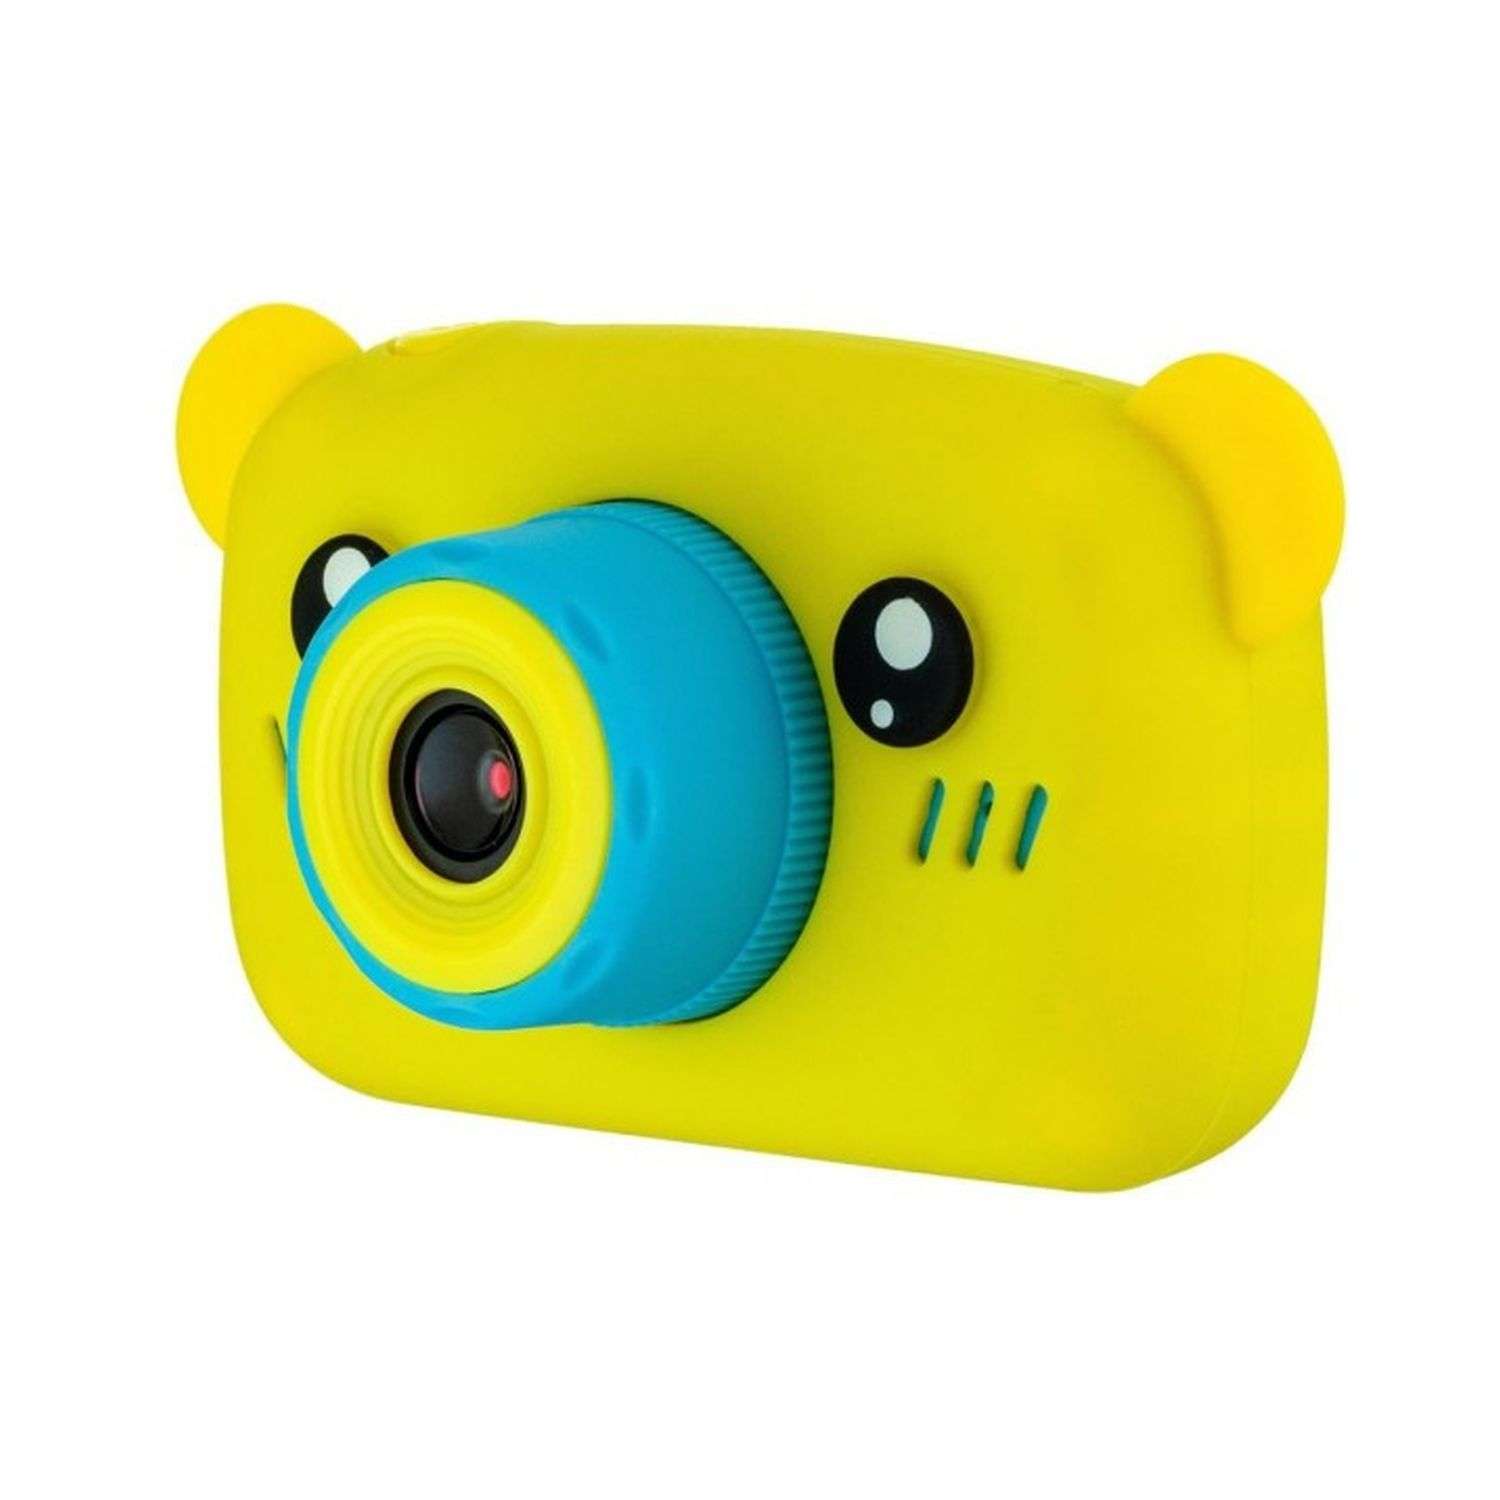 Детский цифровой фотоаппарат Uniglodis желтый мишка - фото 1